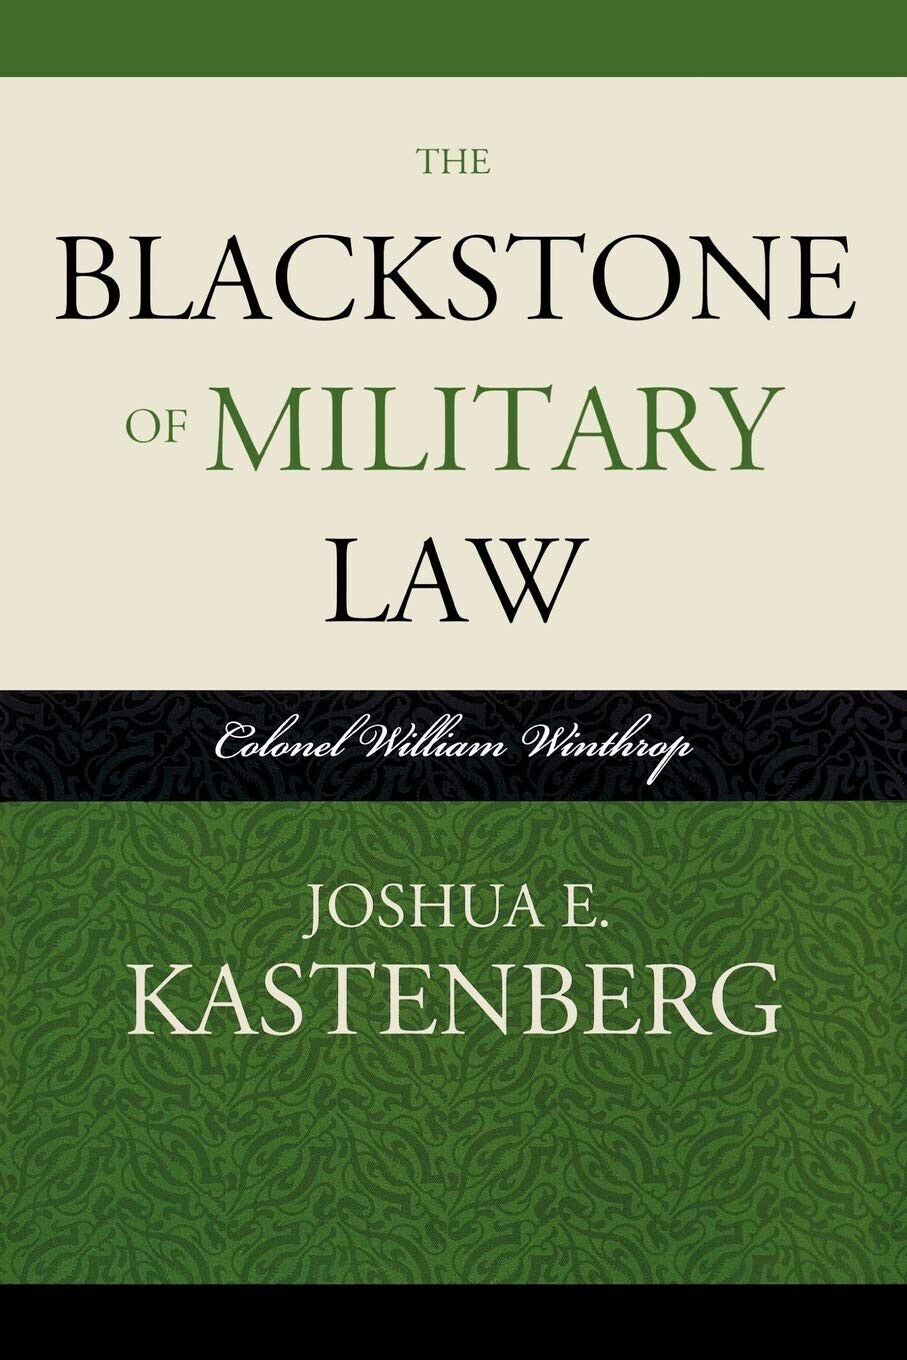 The Blackstone of Military Law - Joshua E. Kastenberg - Scarecrow, 2009